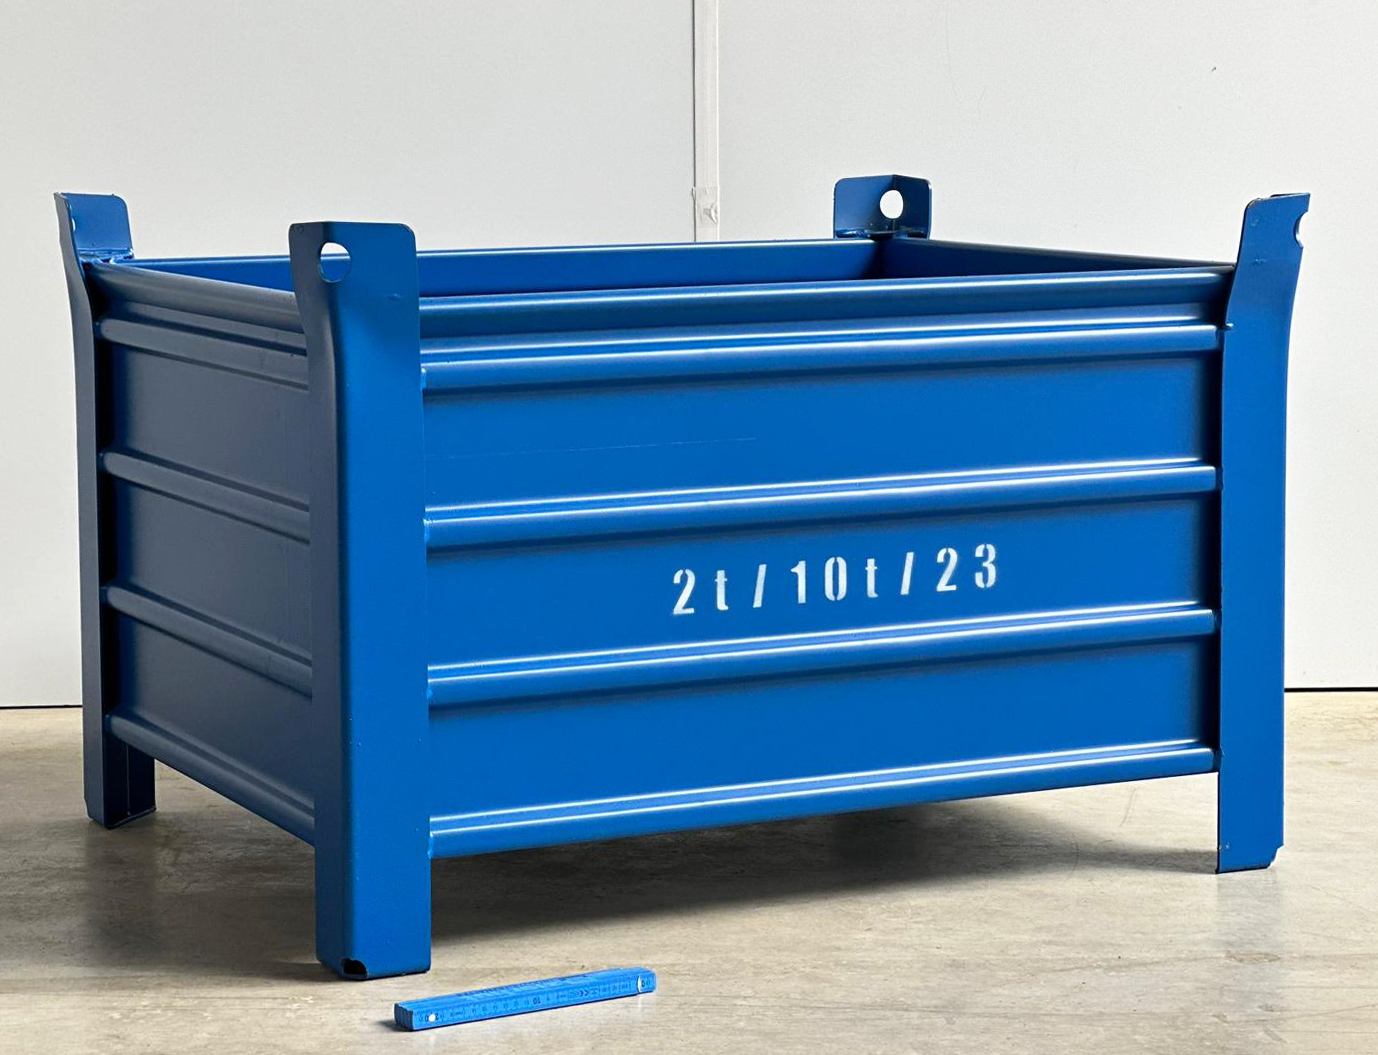 Stahlbehälter SB-186-600Großladungsträger, 1000x800x600 mm, Tragkraft: 2000 kg, blau, neu